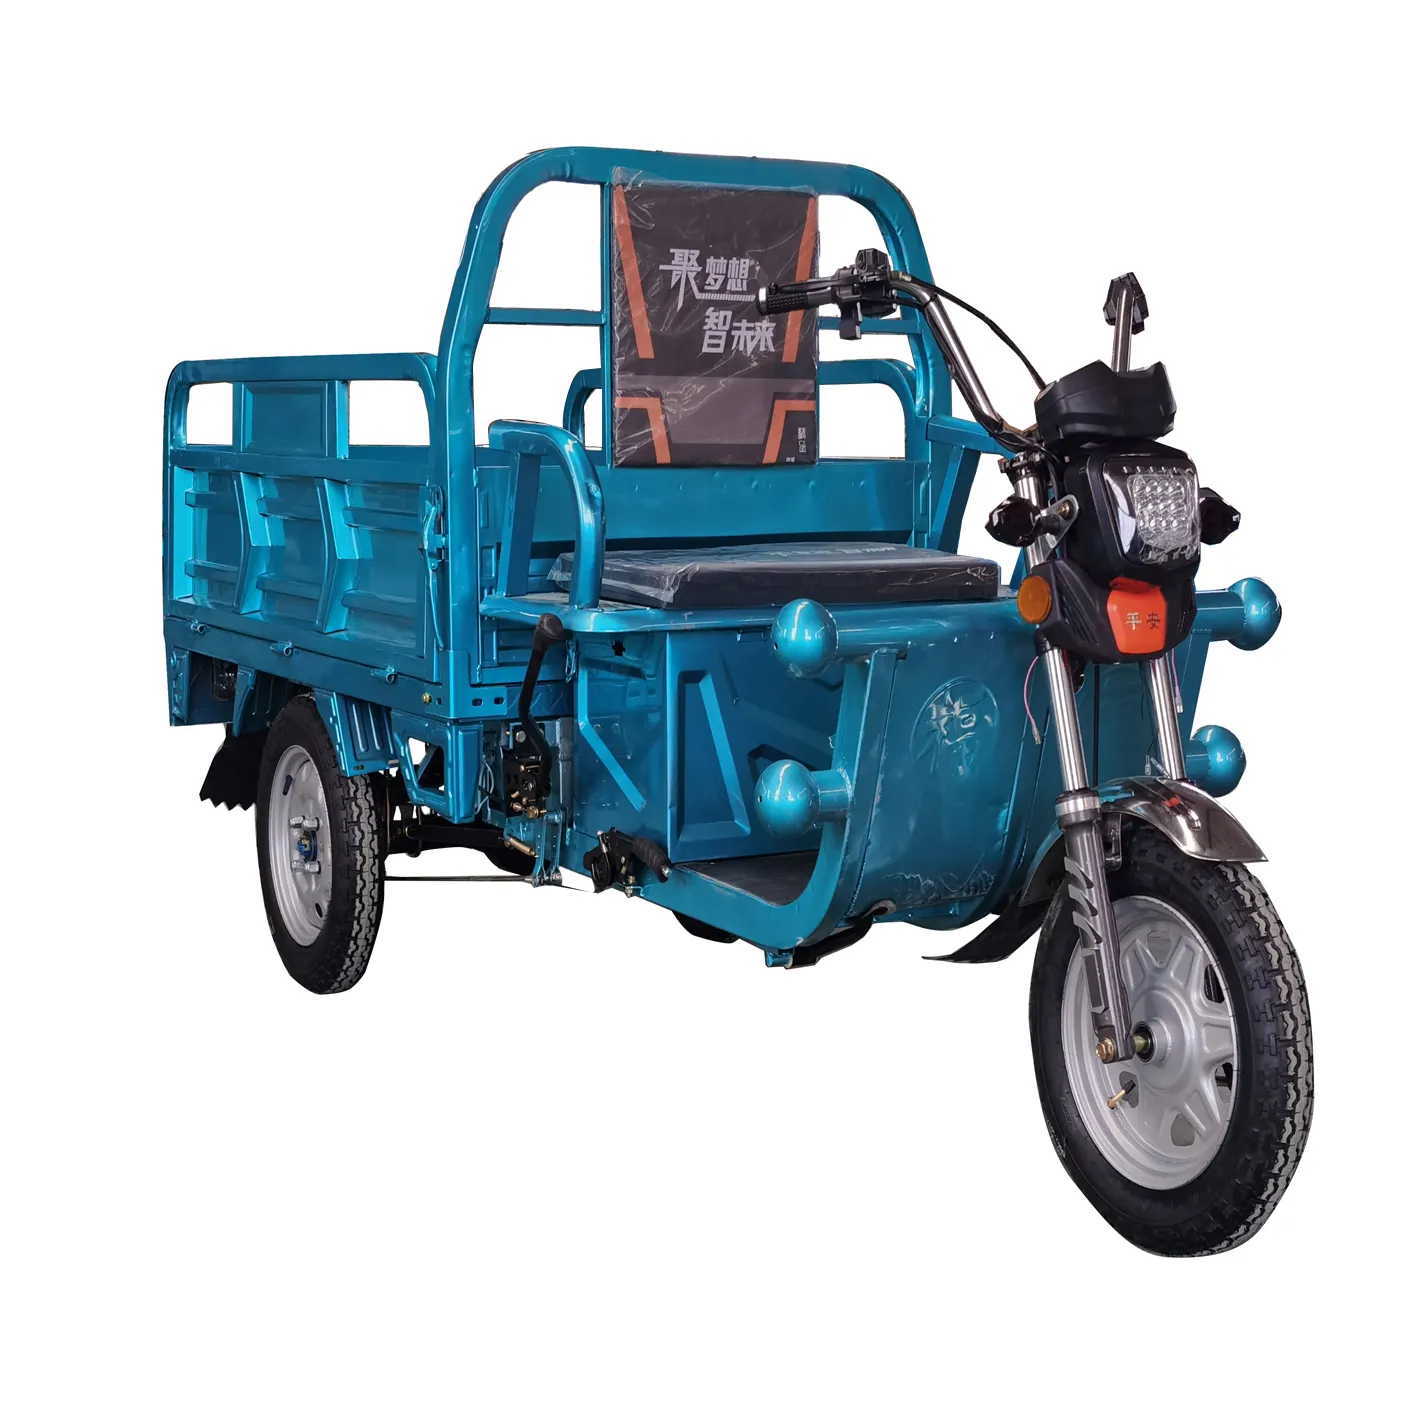 صنع في الصين الكهربائية 3 عجلة دراجة ثلاثية العجلات الكهربائية دراجة نارية البضائع الأسرة استخدام مزرعة أخرى دراجة ثلاثية العجلات